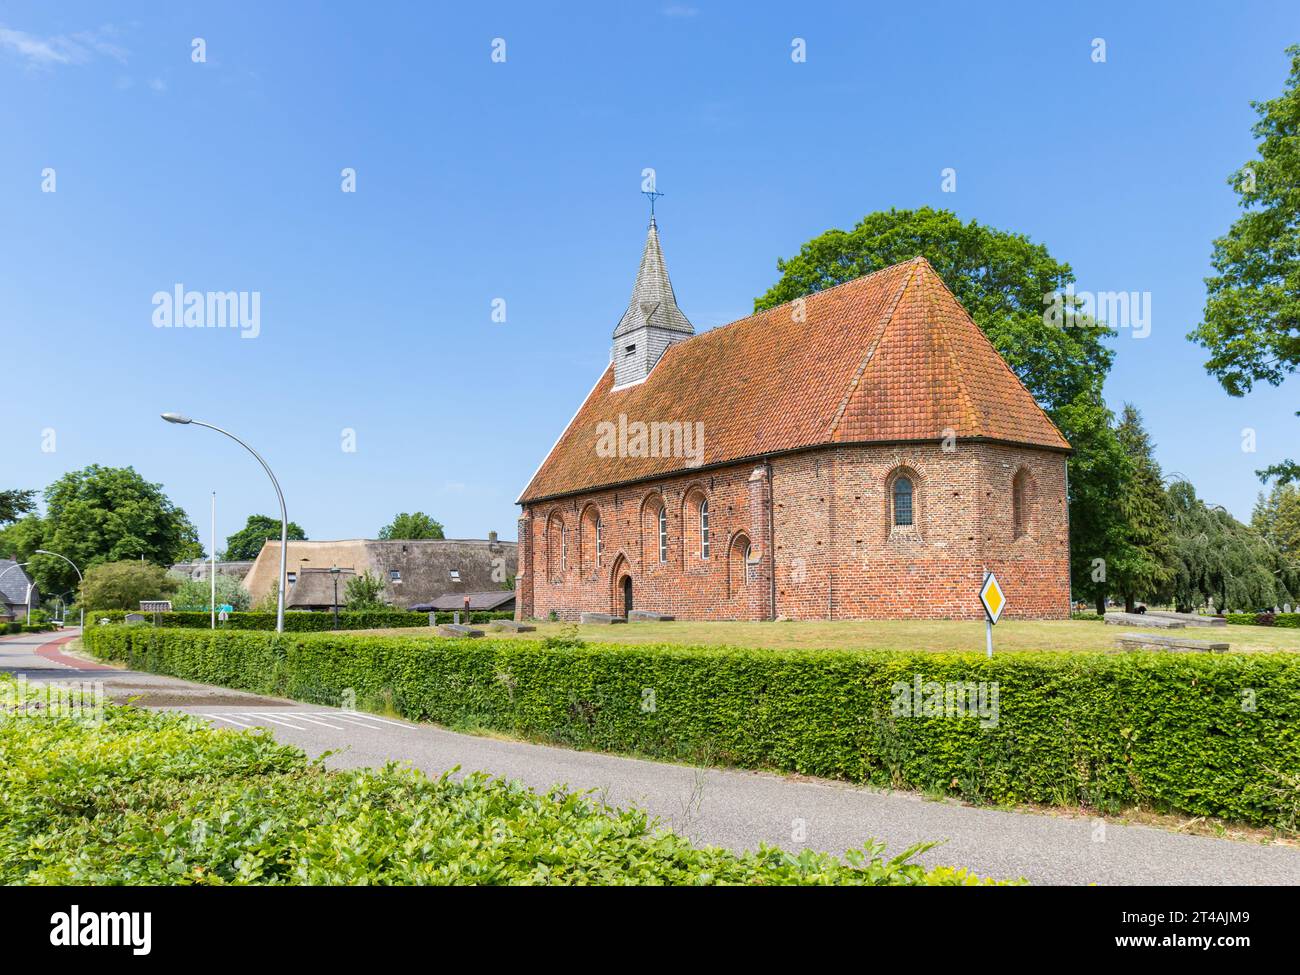 Historische Kirche im kleinen Dorf Zweeloo, Niederlande Stockfoto